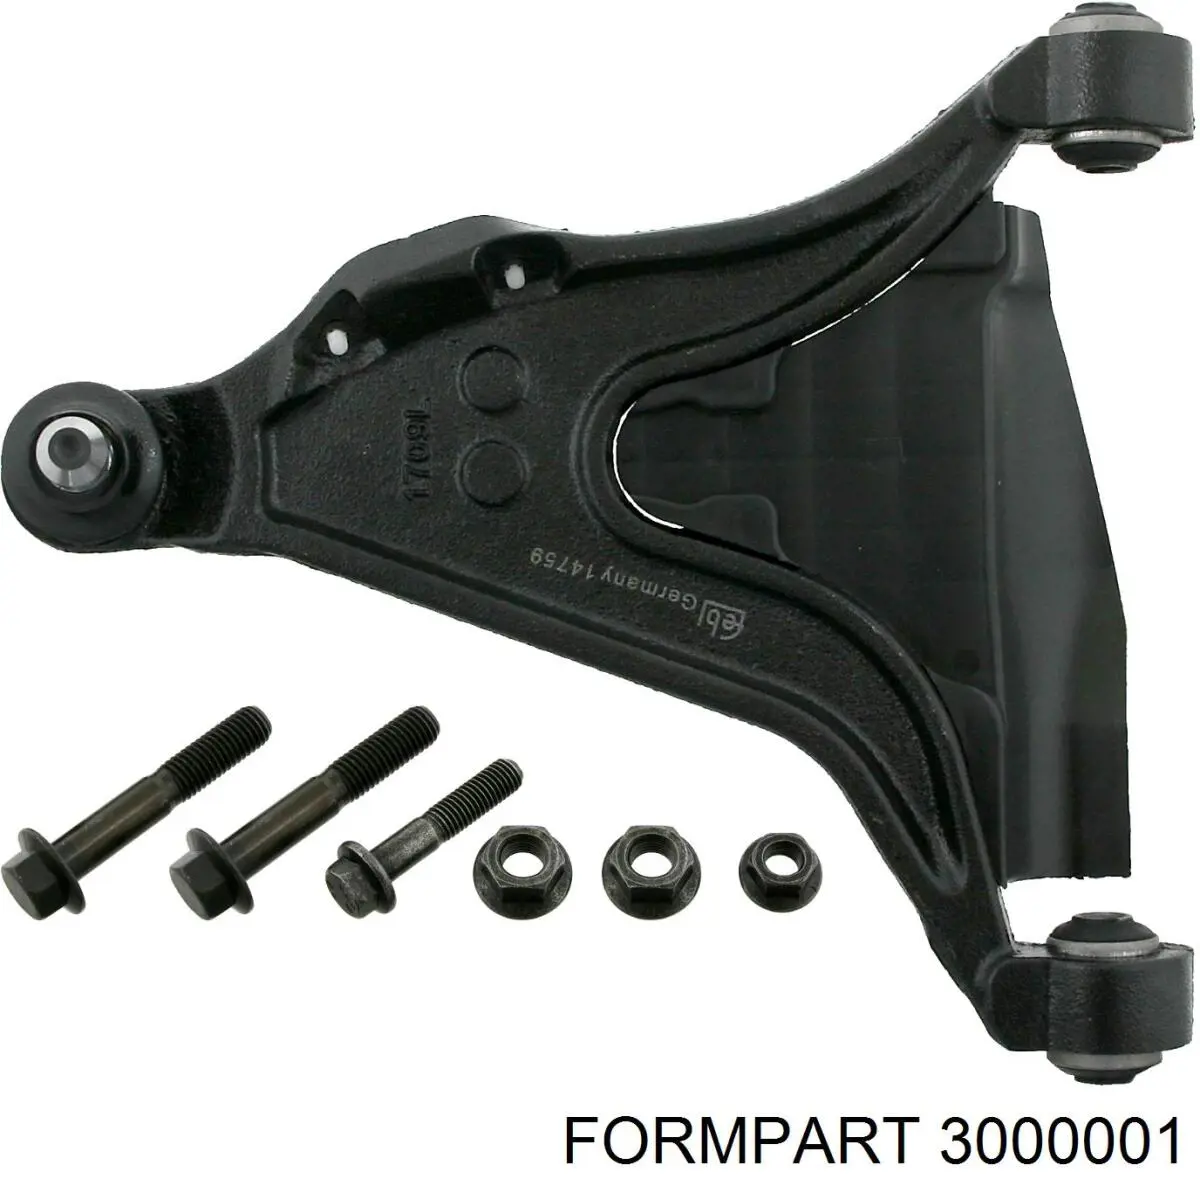 3000001 Formpart/Otoform silentblock de suspensión delantero inferior